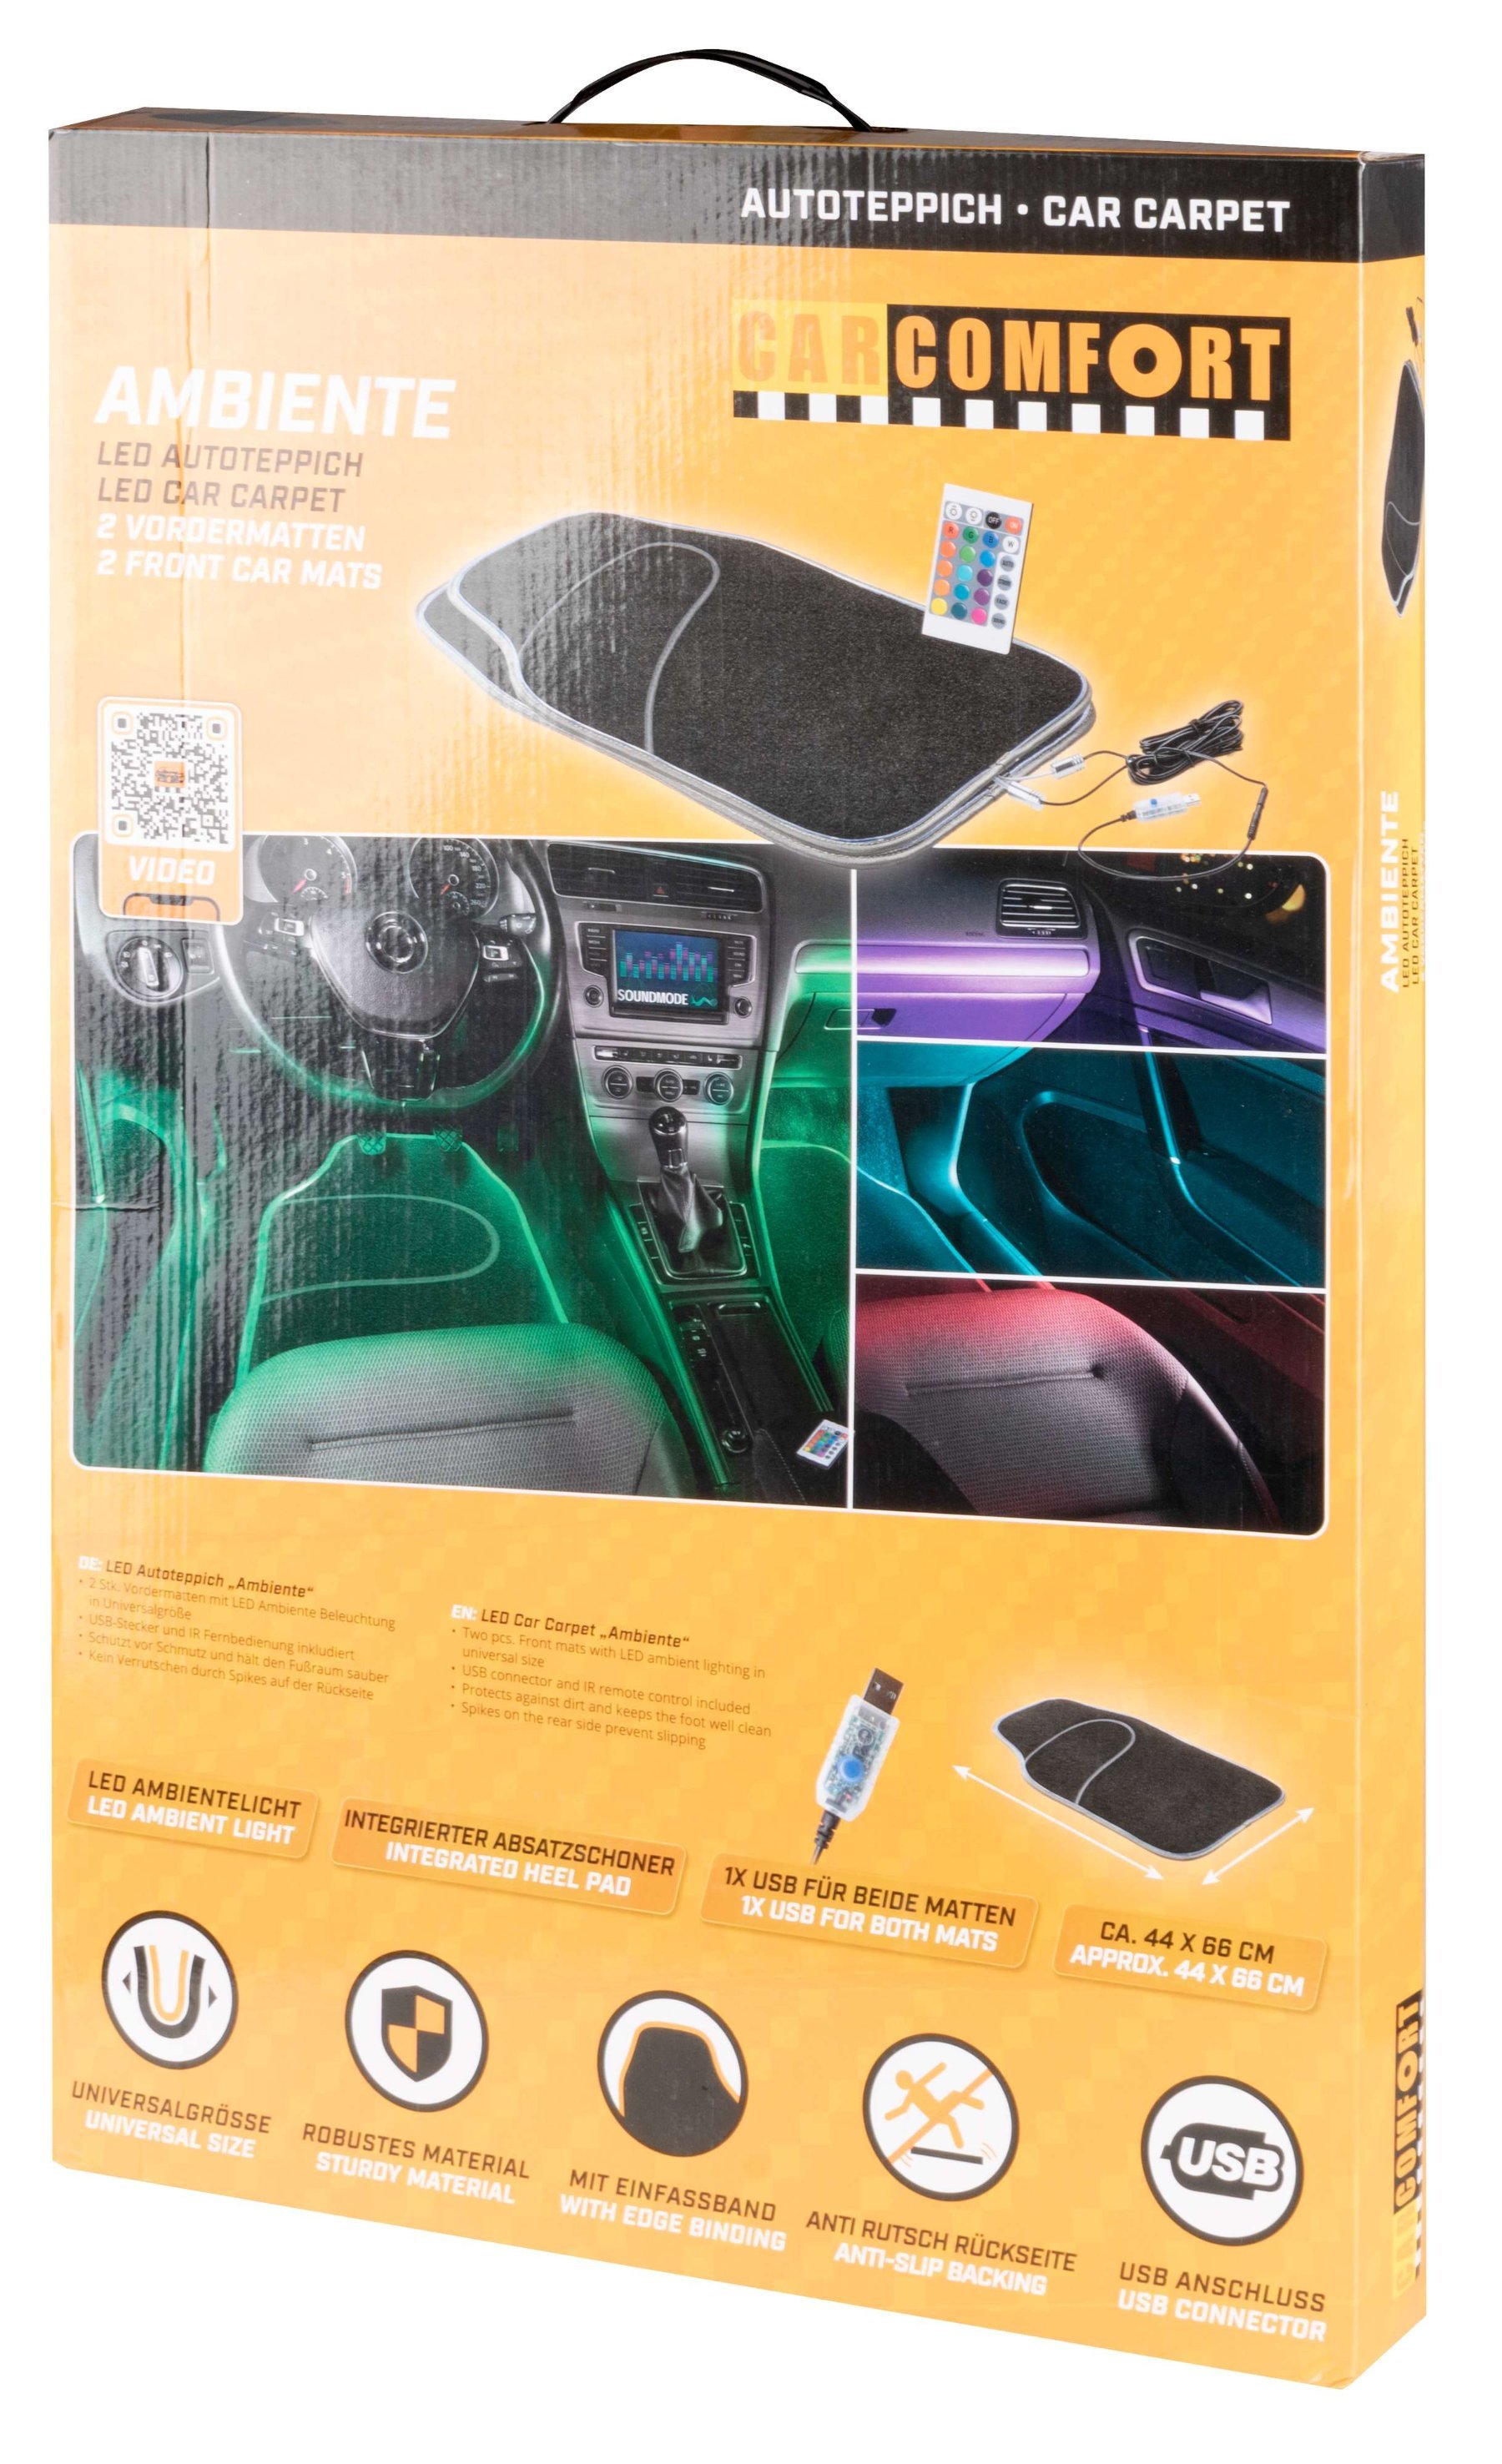 Tappeto auto LED Ambiente con selezione del colore, varie funzioni di luce e telecomando per l'illuminazione dell'ambiente